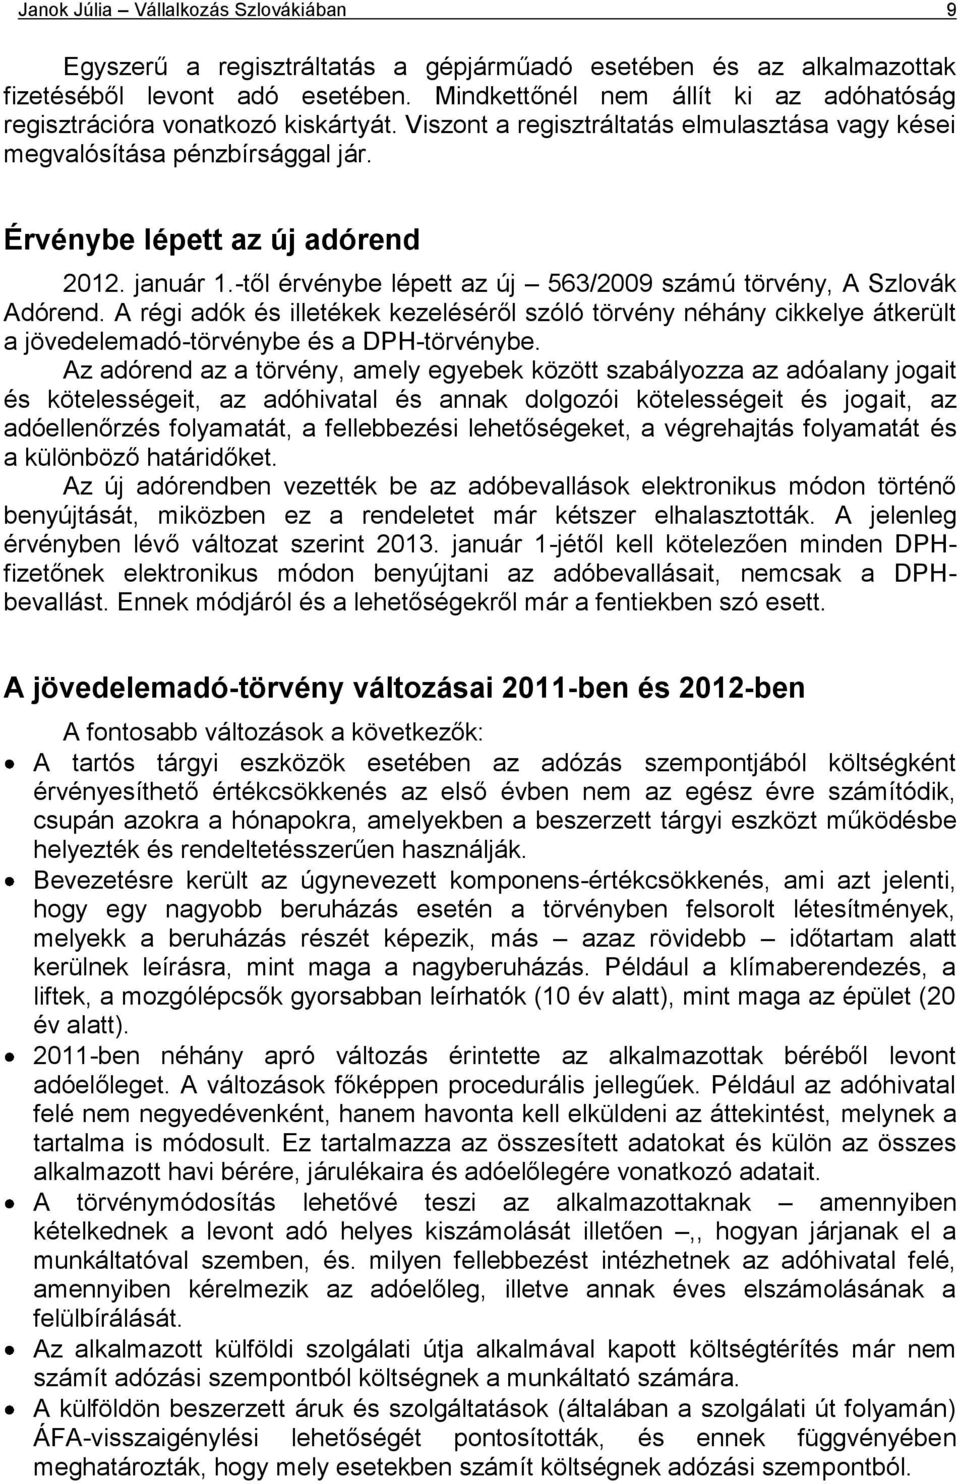 január 1.-től érvénybe lépett az új 563/2009 számú törvény, A Szlovák Adórend. A régi adók és illetékek kezeléséről szóló törvény néhány cikkelye átkerült a jövedelemadó-törvénybe és a DPH-törvénybe.